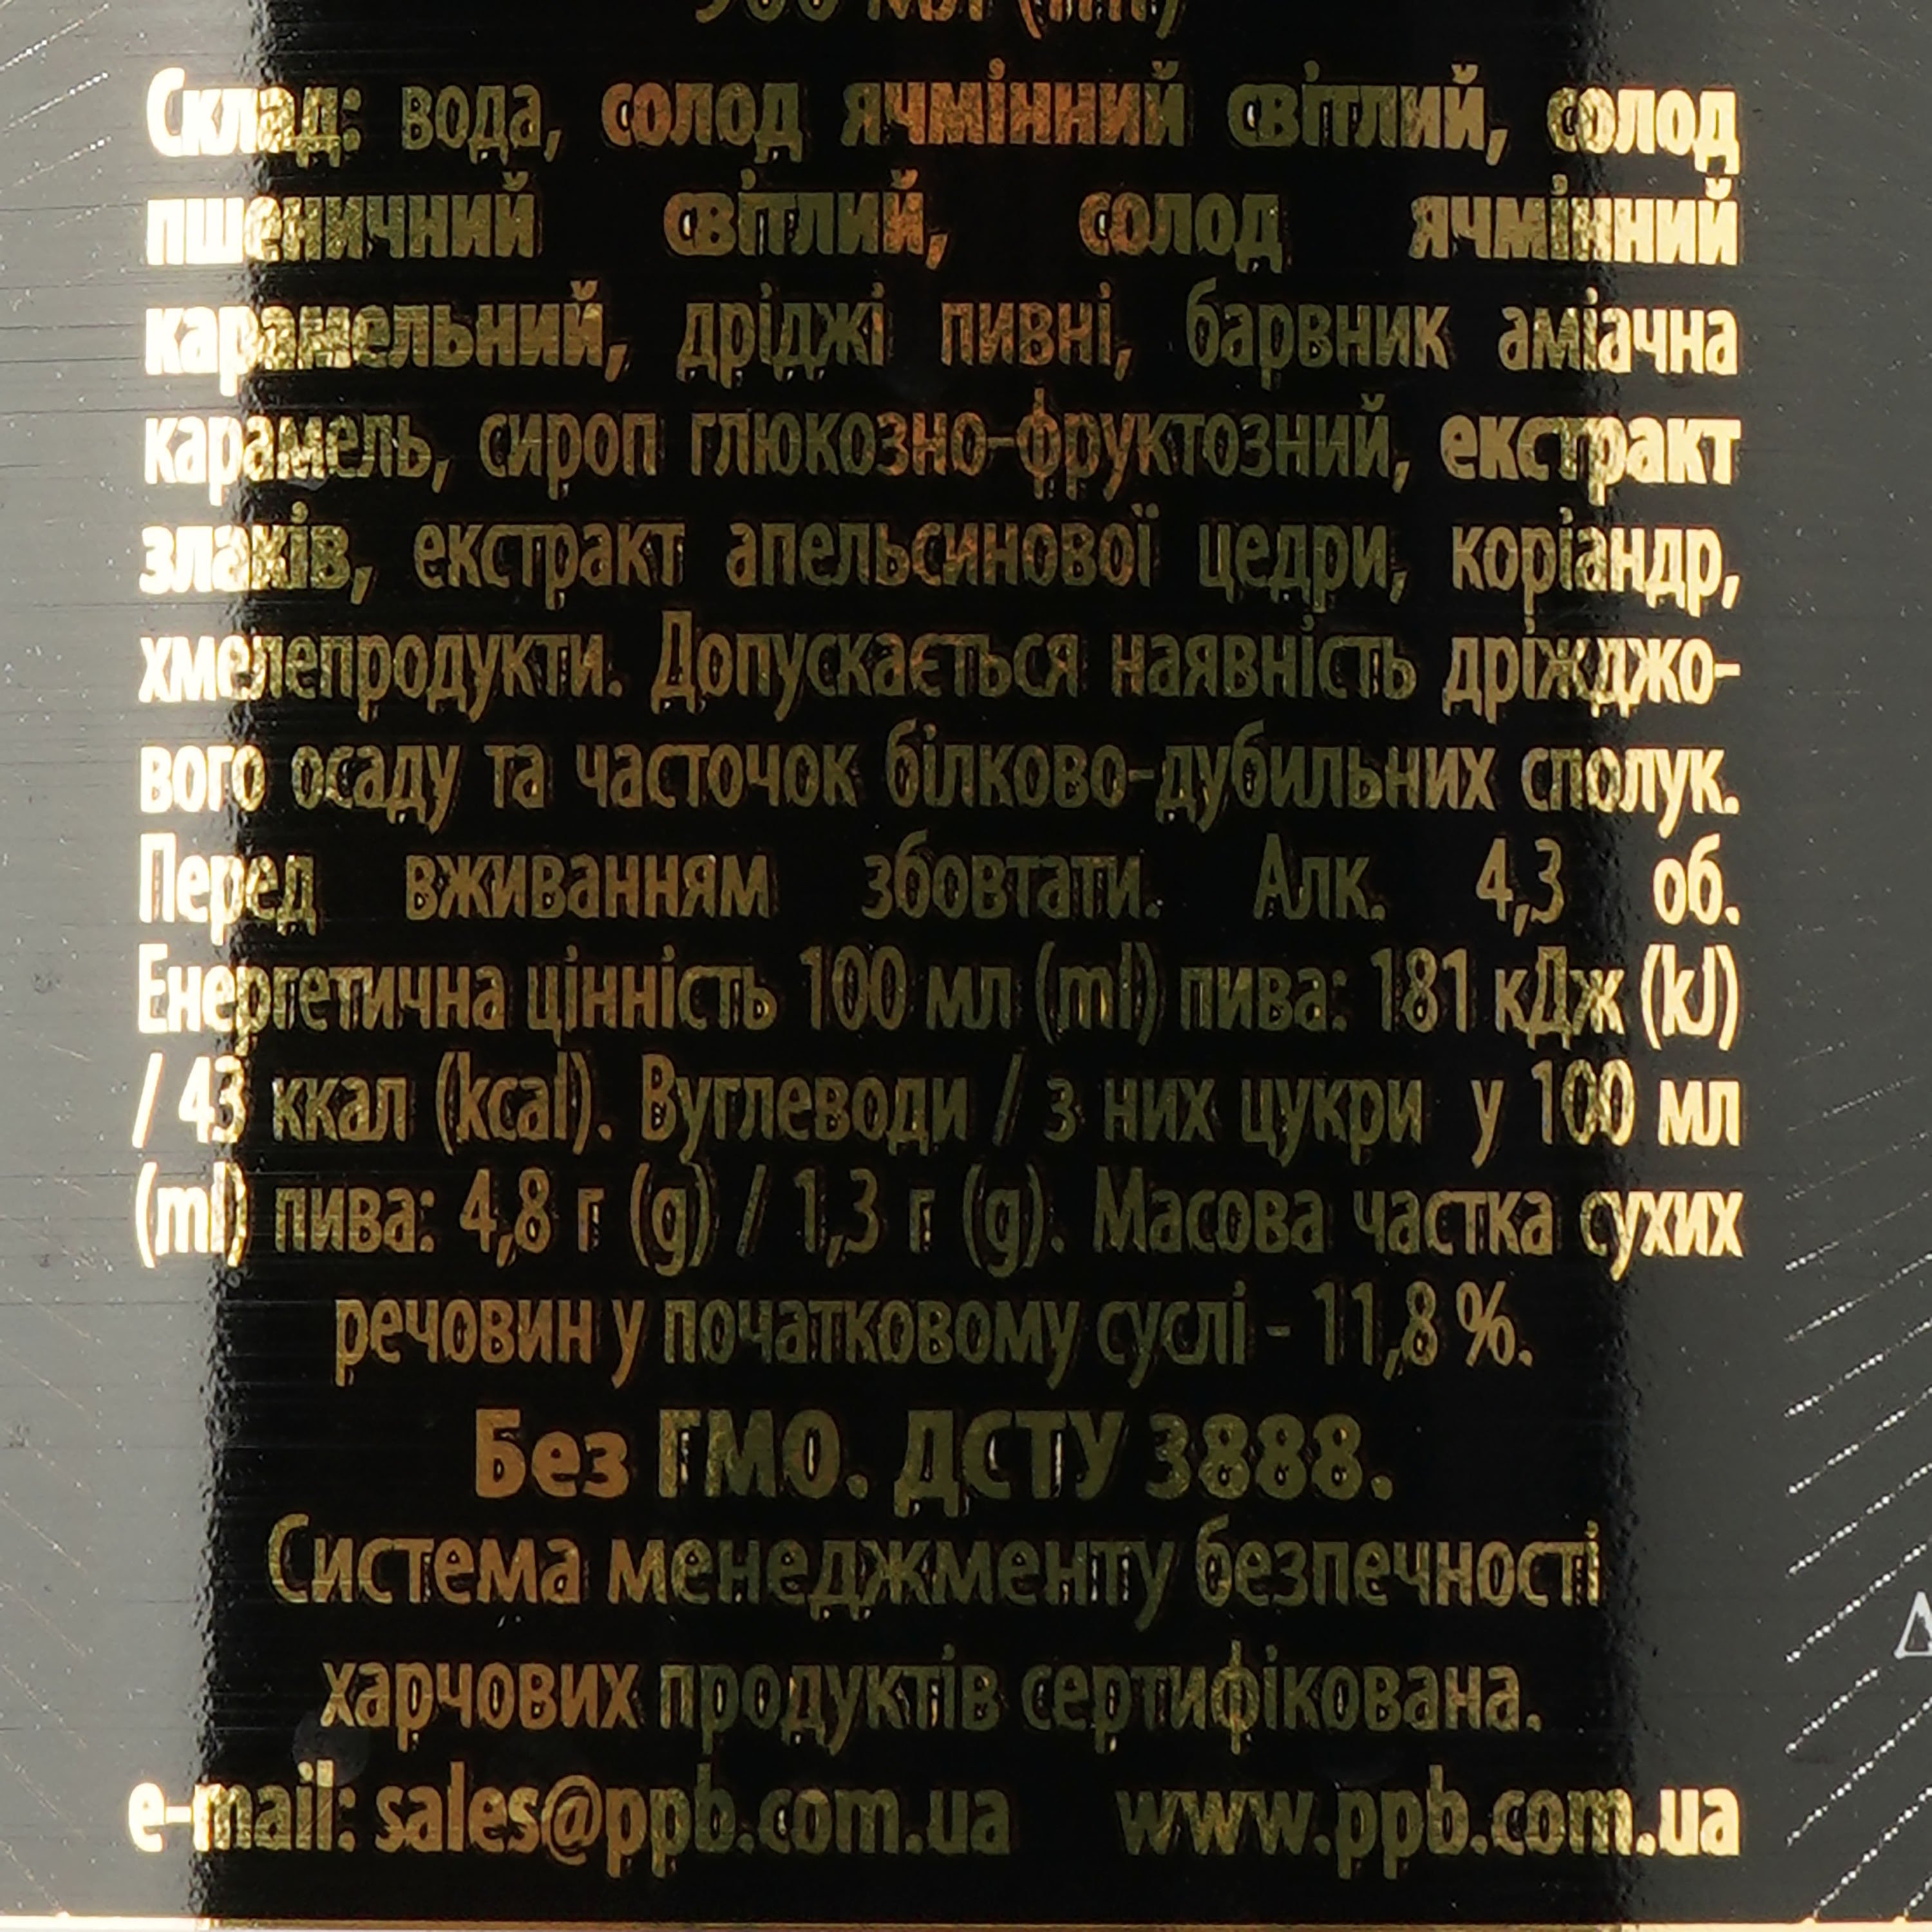 Пиво Перша приватна броварня Бочковое, темное, нефильрованное, 4,8%, 0,9 л (770492) - фото 3